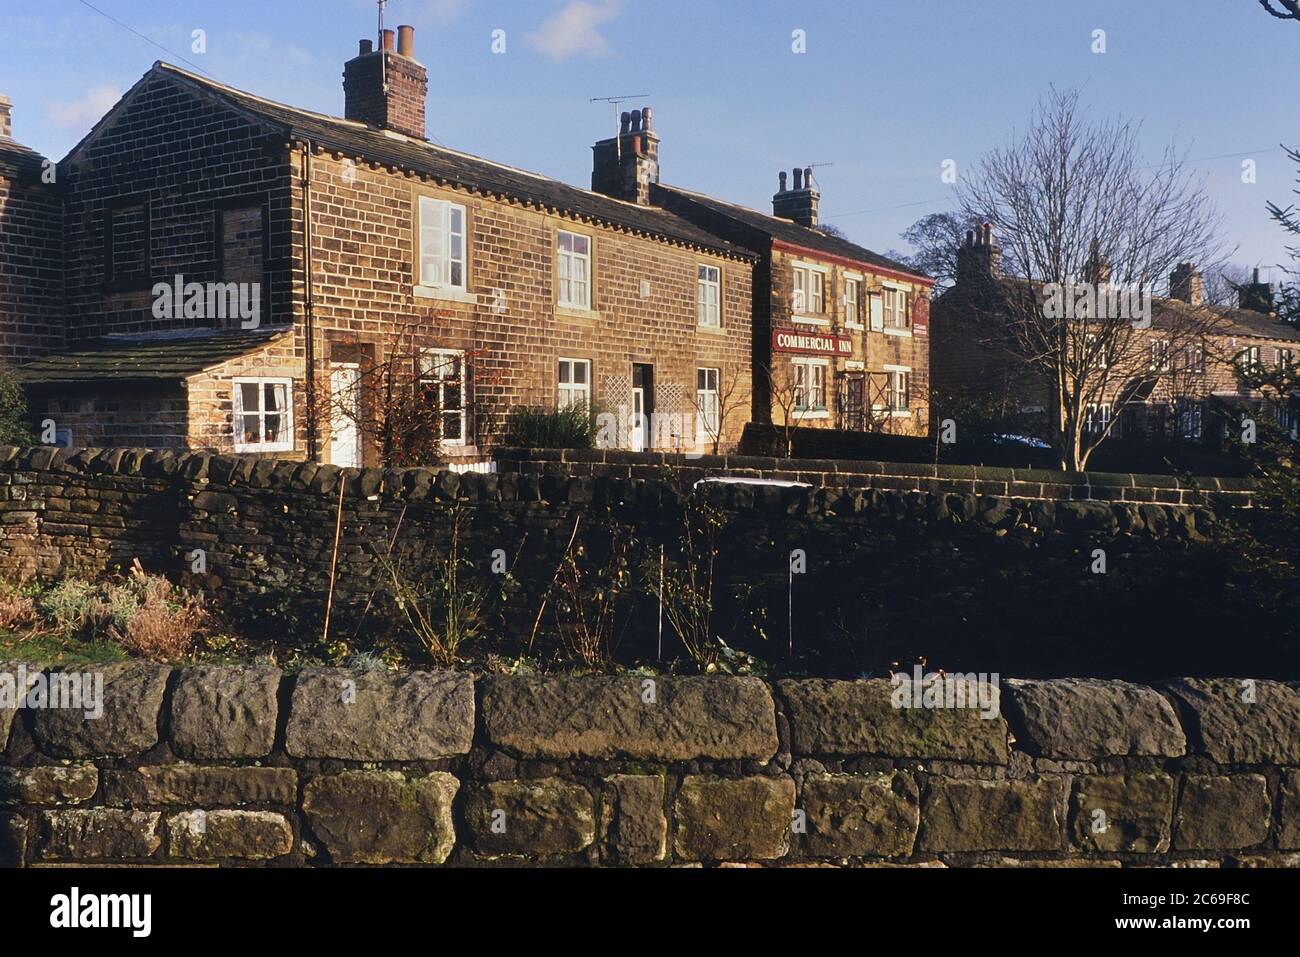 The Commerical Inn - plus tard rebaptisé Woolpack pour le programme de télévision Emmerdale quand il a été filmé dans le village d'Esholt, West Yorkshire, Angleterre, Royaume-Uni. Vers les années 1980 Banque D'Images